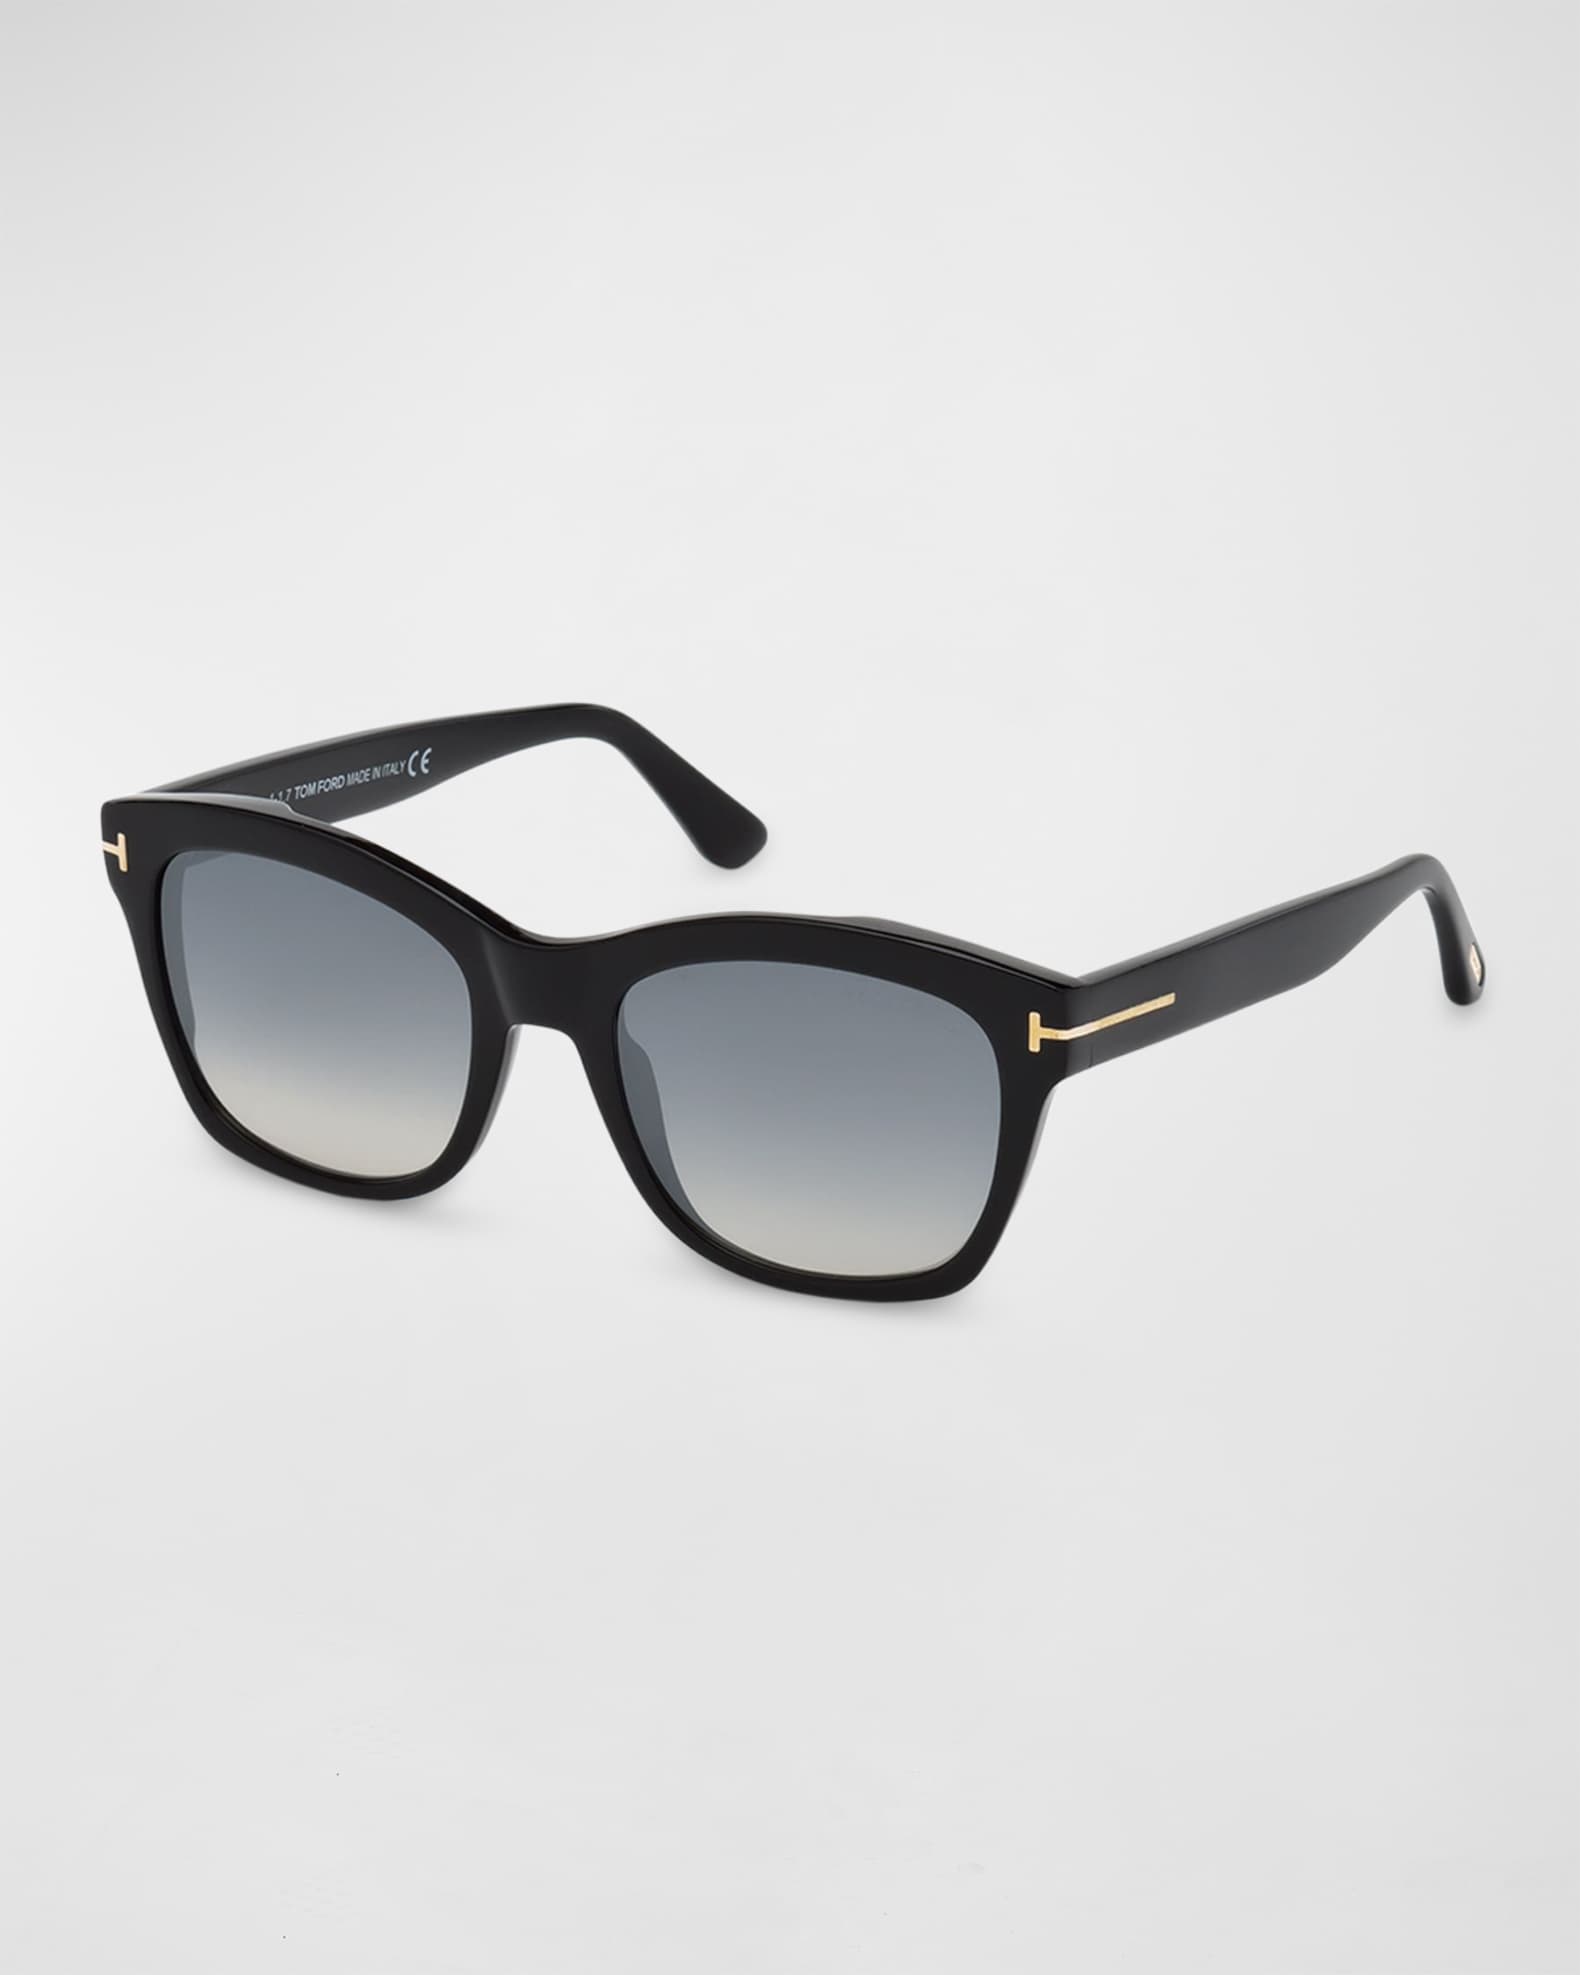 Tom Ford Gradient Square Acetate Sunglasses Neiman Marcus